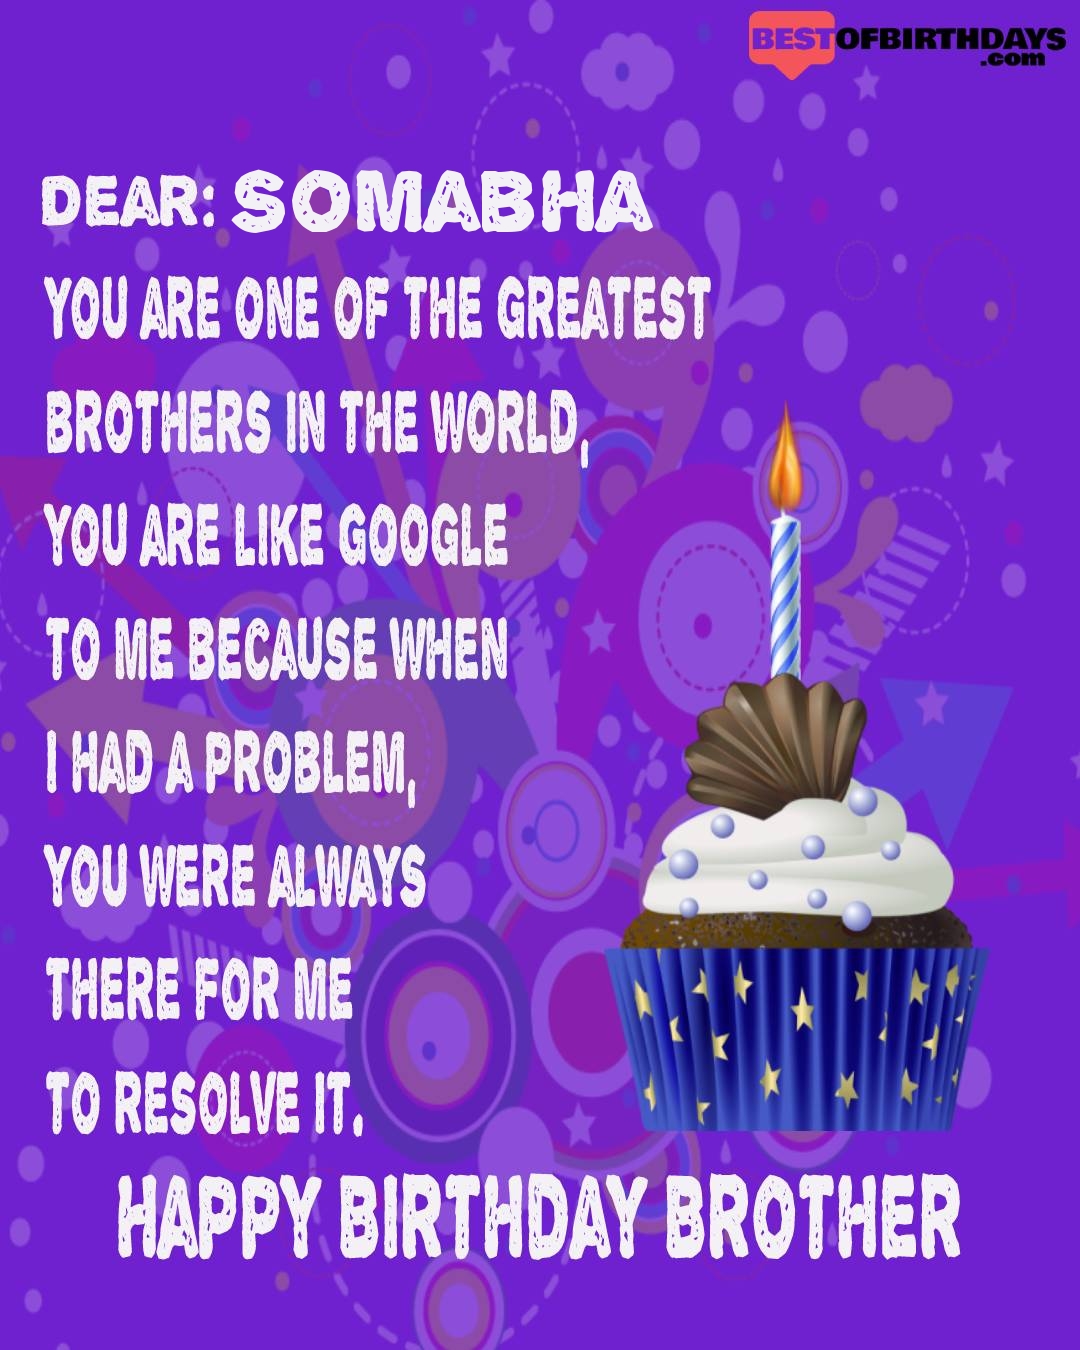 Happy birthday somabha bhai brother bro